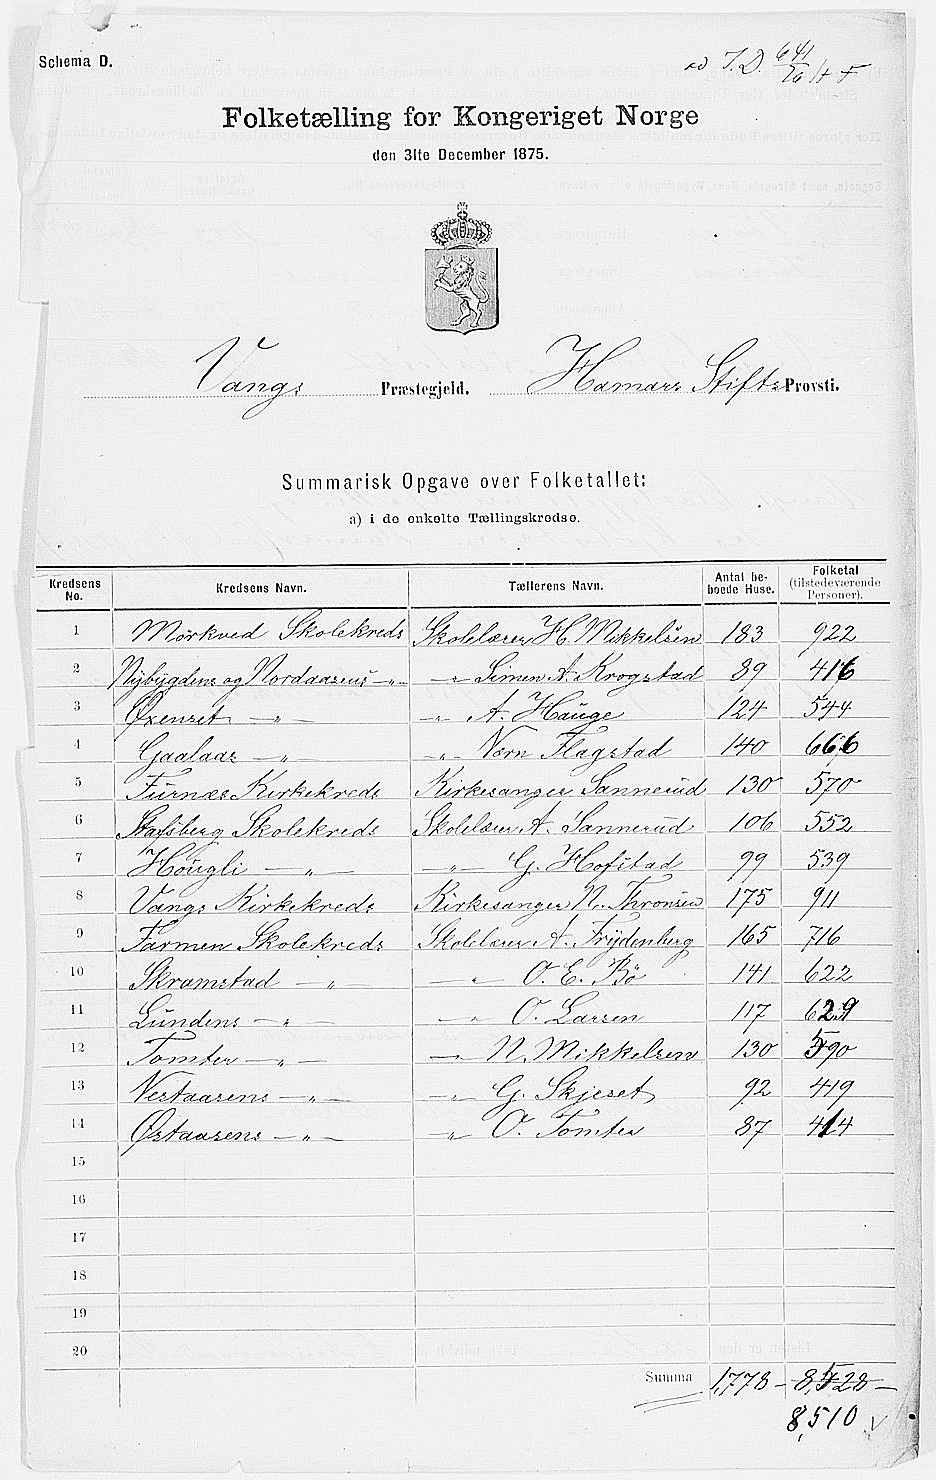 Folketellingen 1875 – Vang kommune hjelp til avskrift